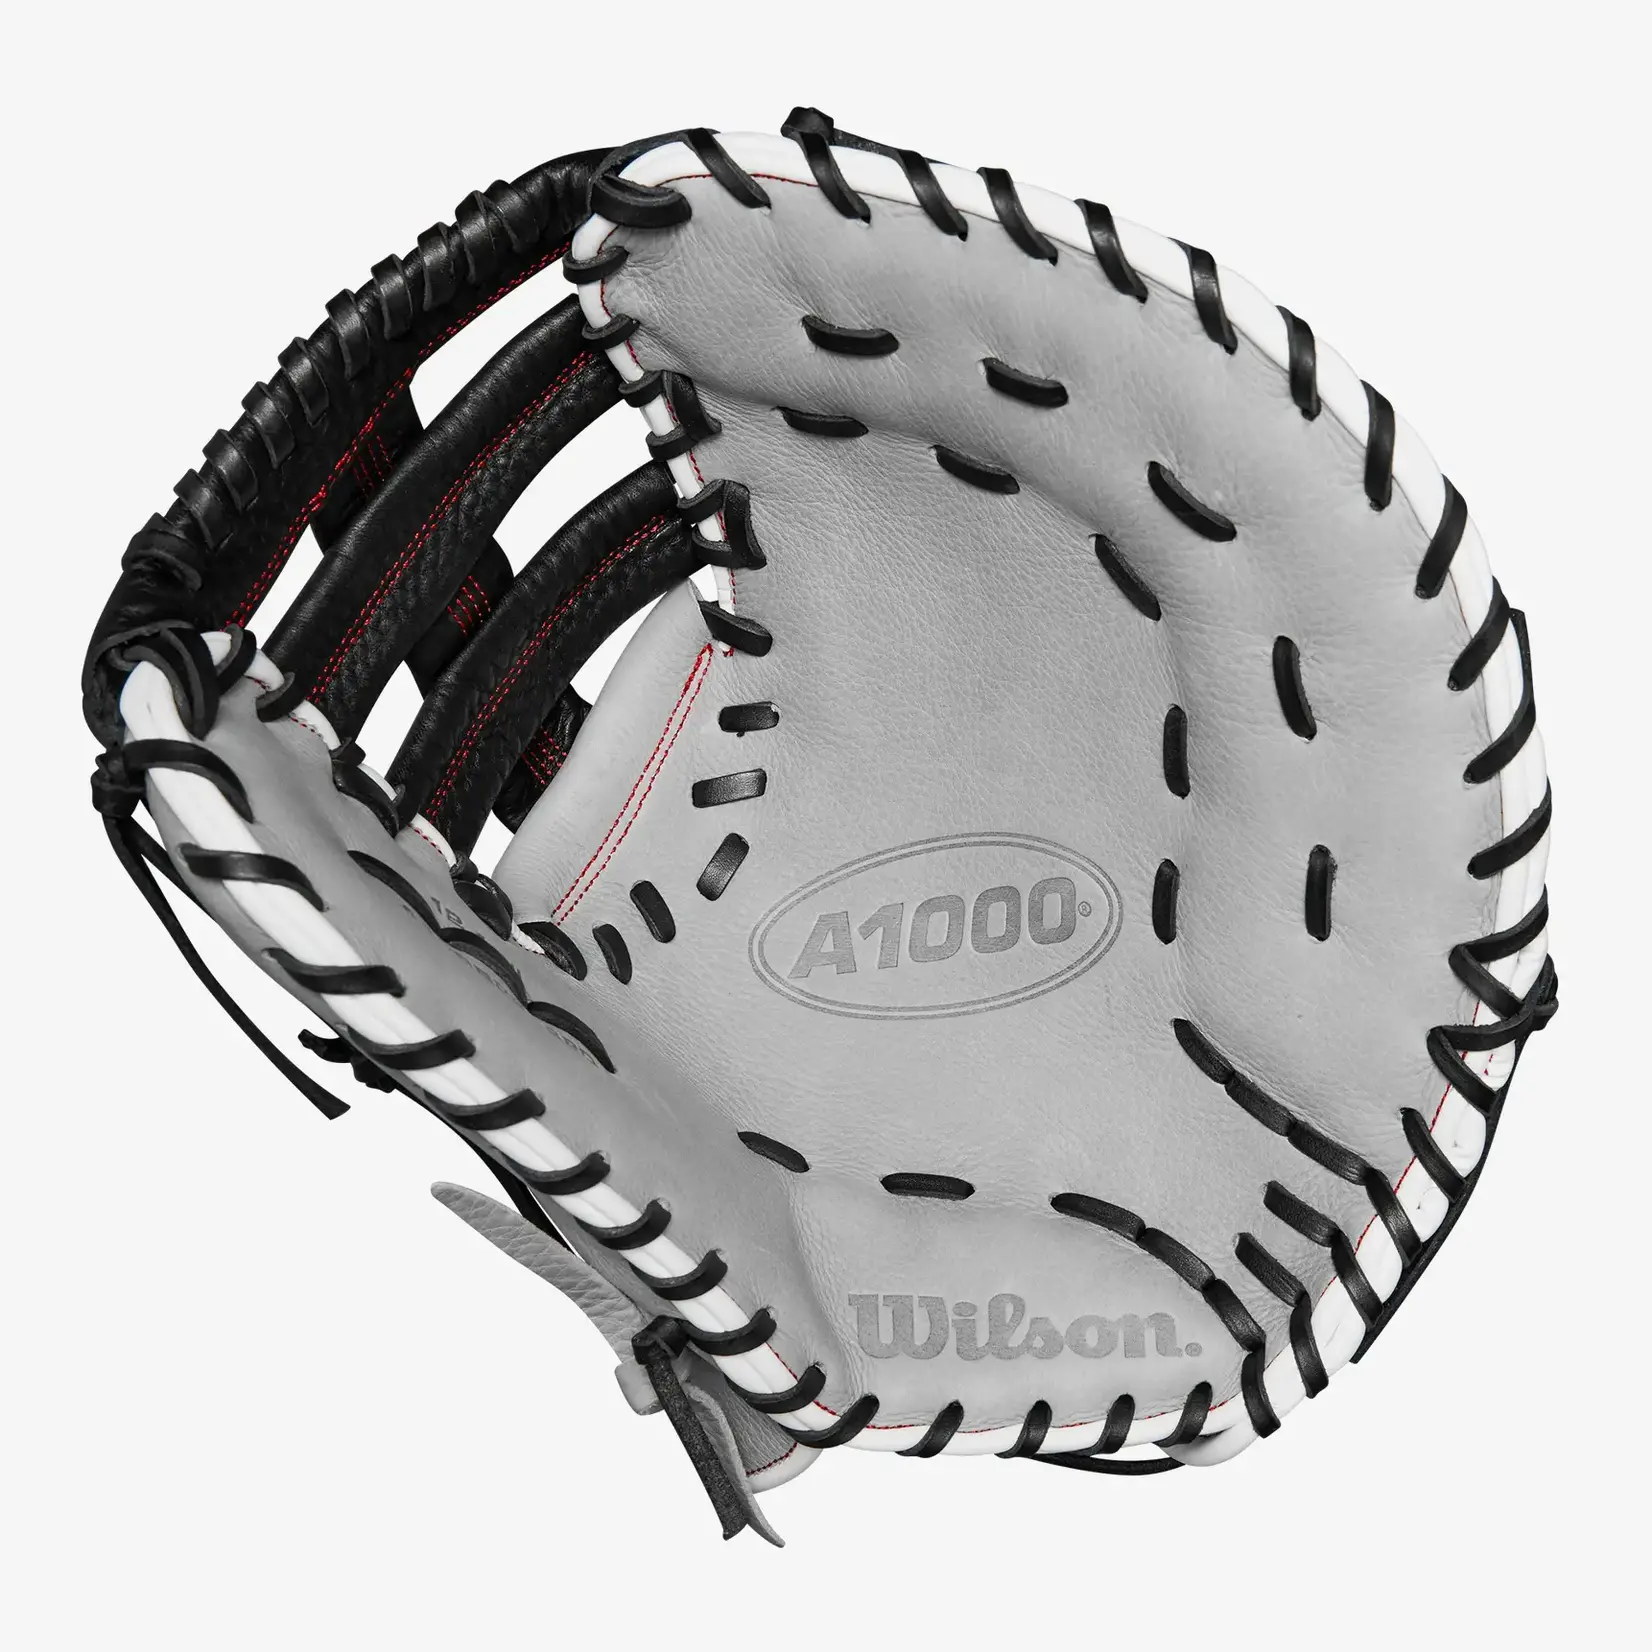 Wilson Wilson Baseball Glove, A1000 1620, Reg, 12.5", First Base Pattern, Blk/Gry/Wht